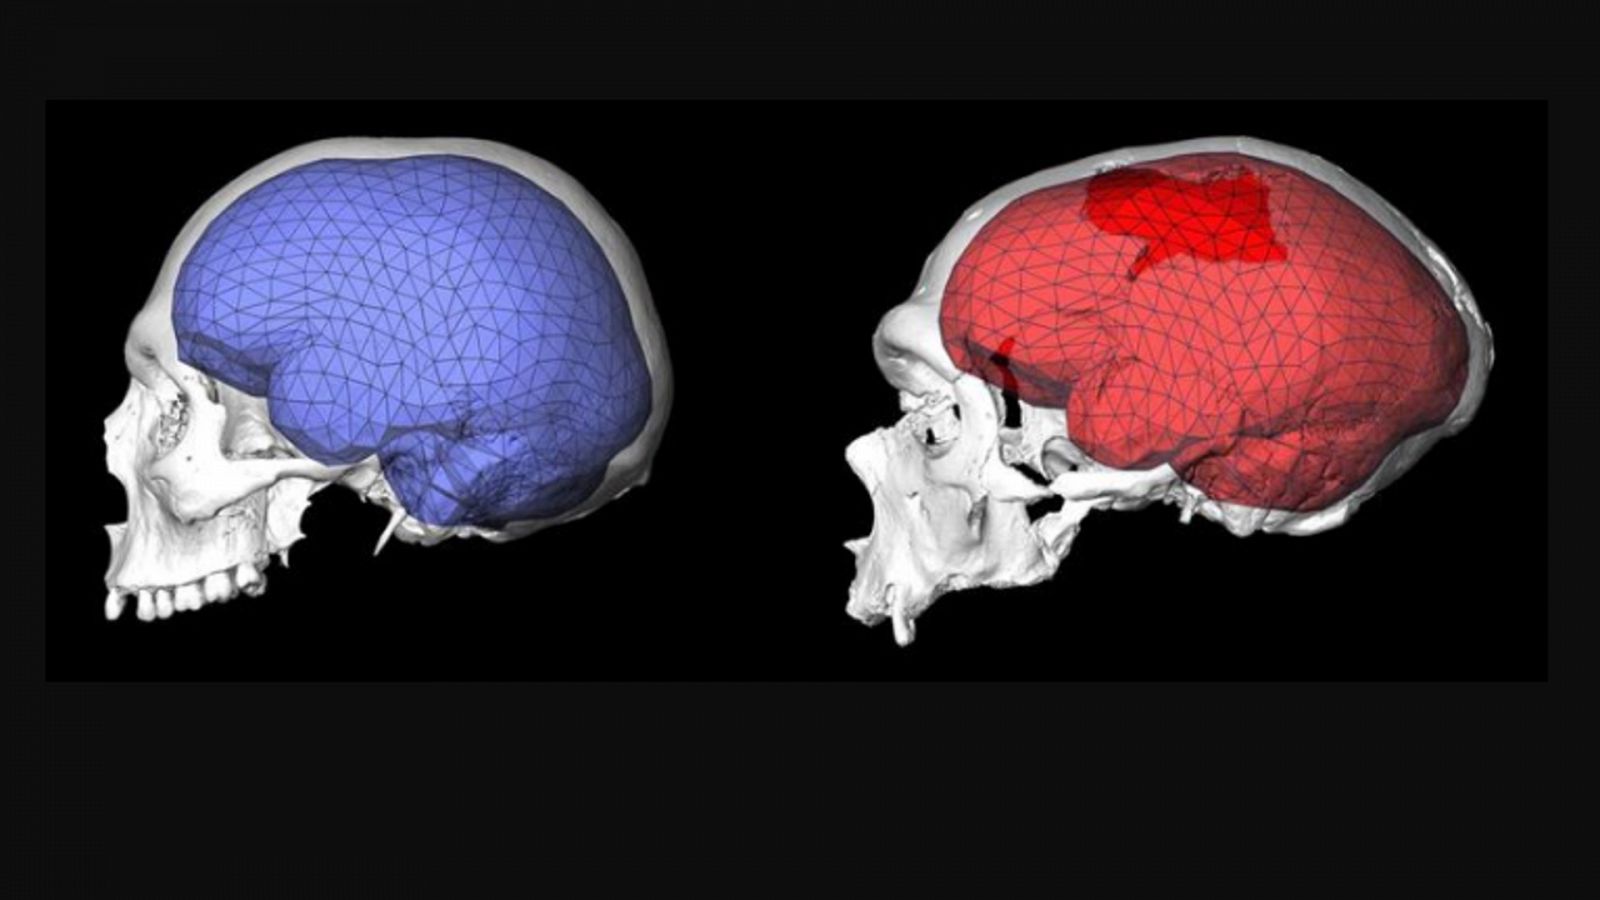 Diferencia entre un cerebro humano y uno neandertal